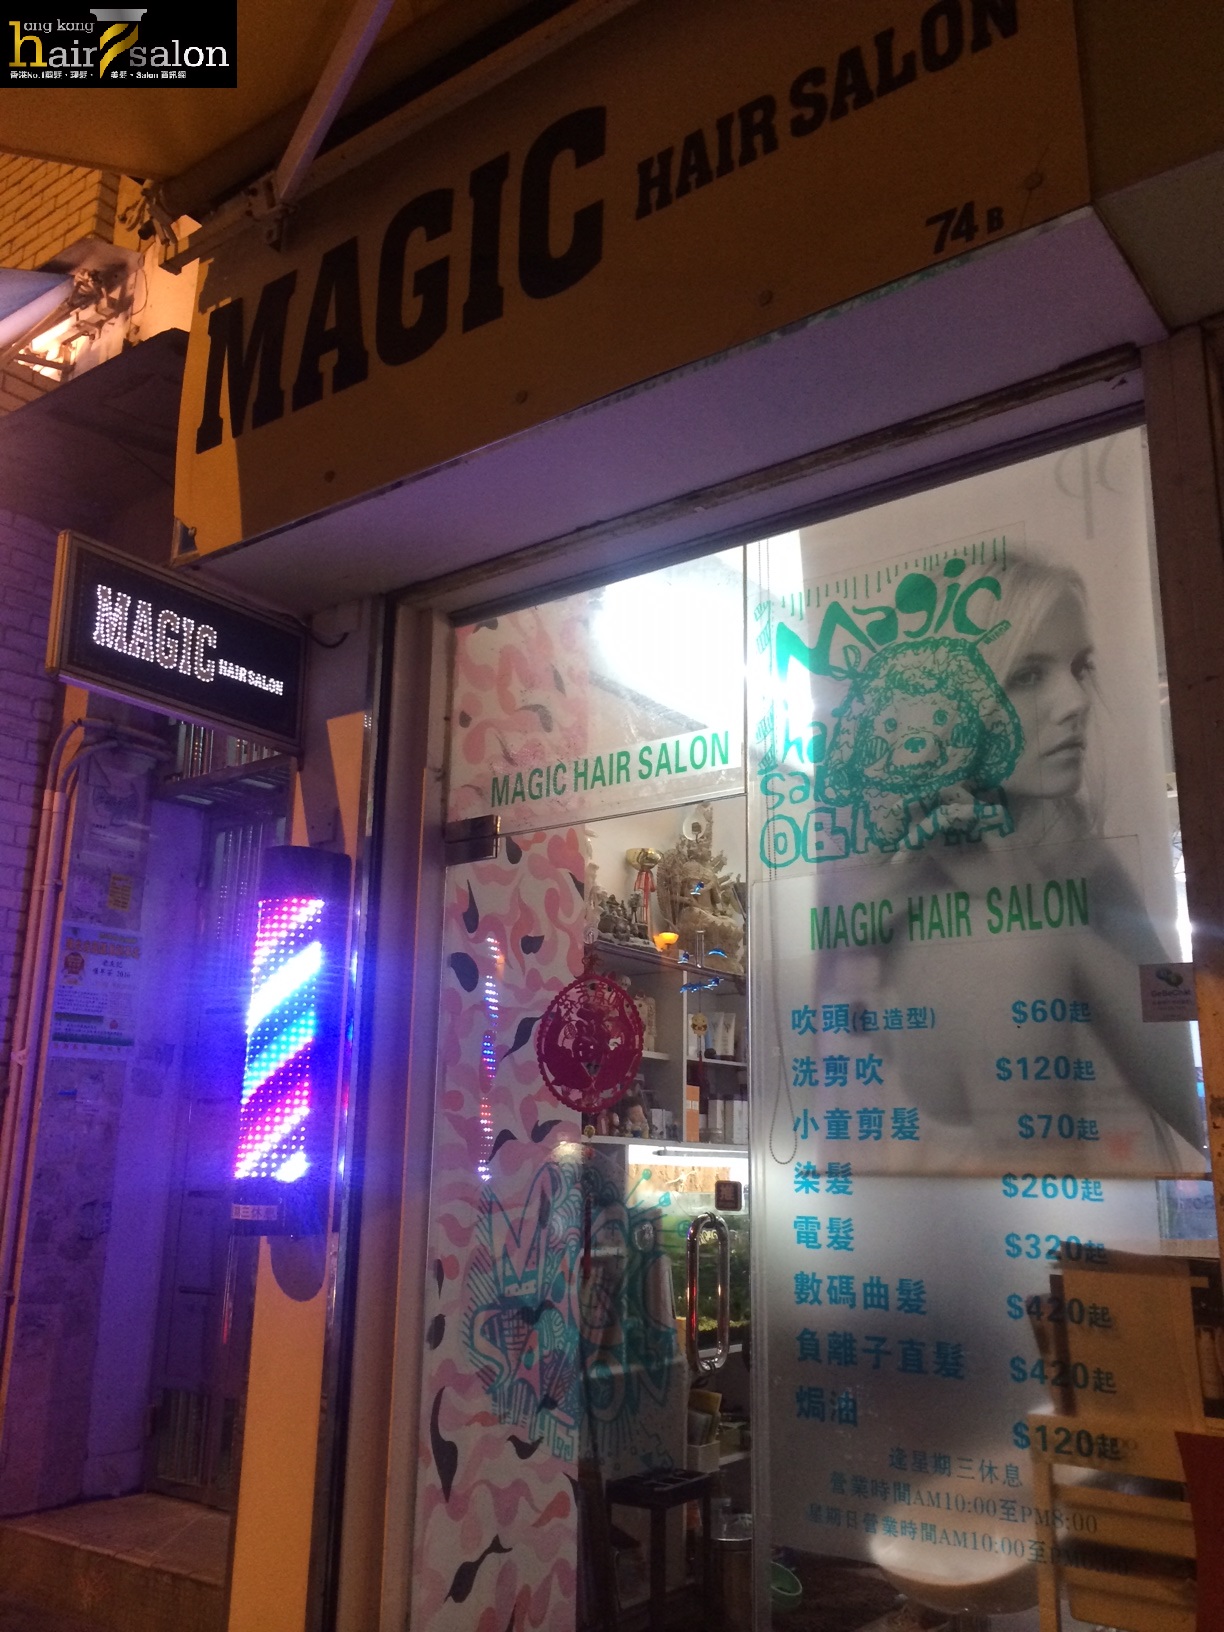 黃大仙髮型屋: Magic Hair Salon | 香港美髮網HK Hair Salon